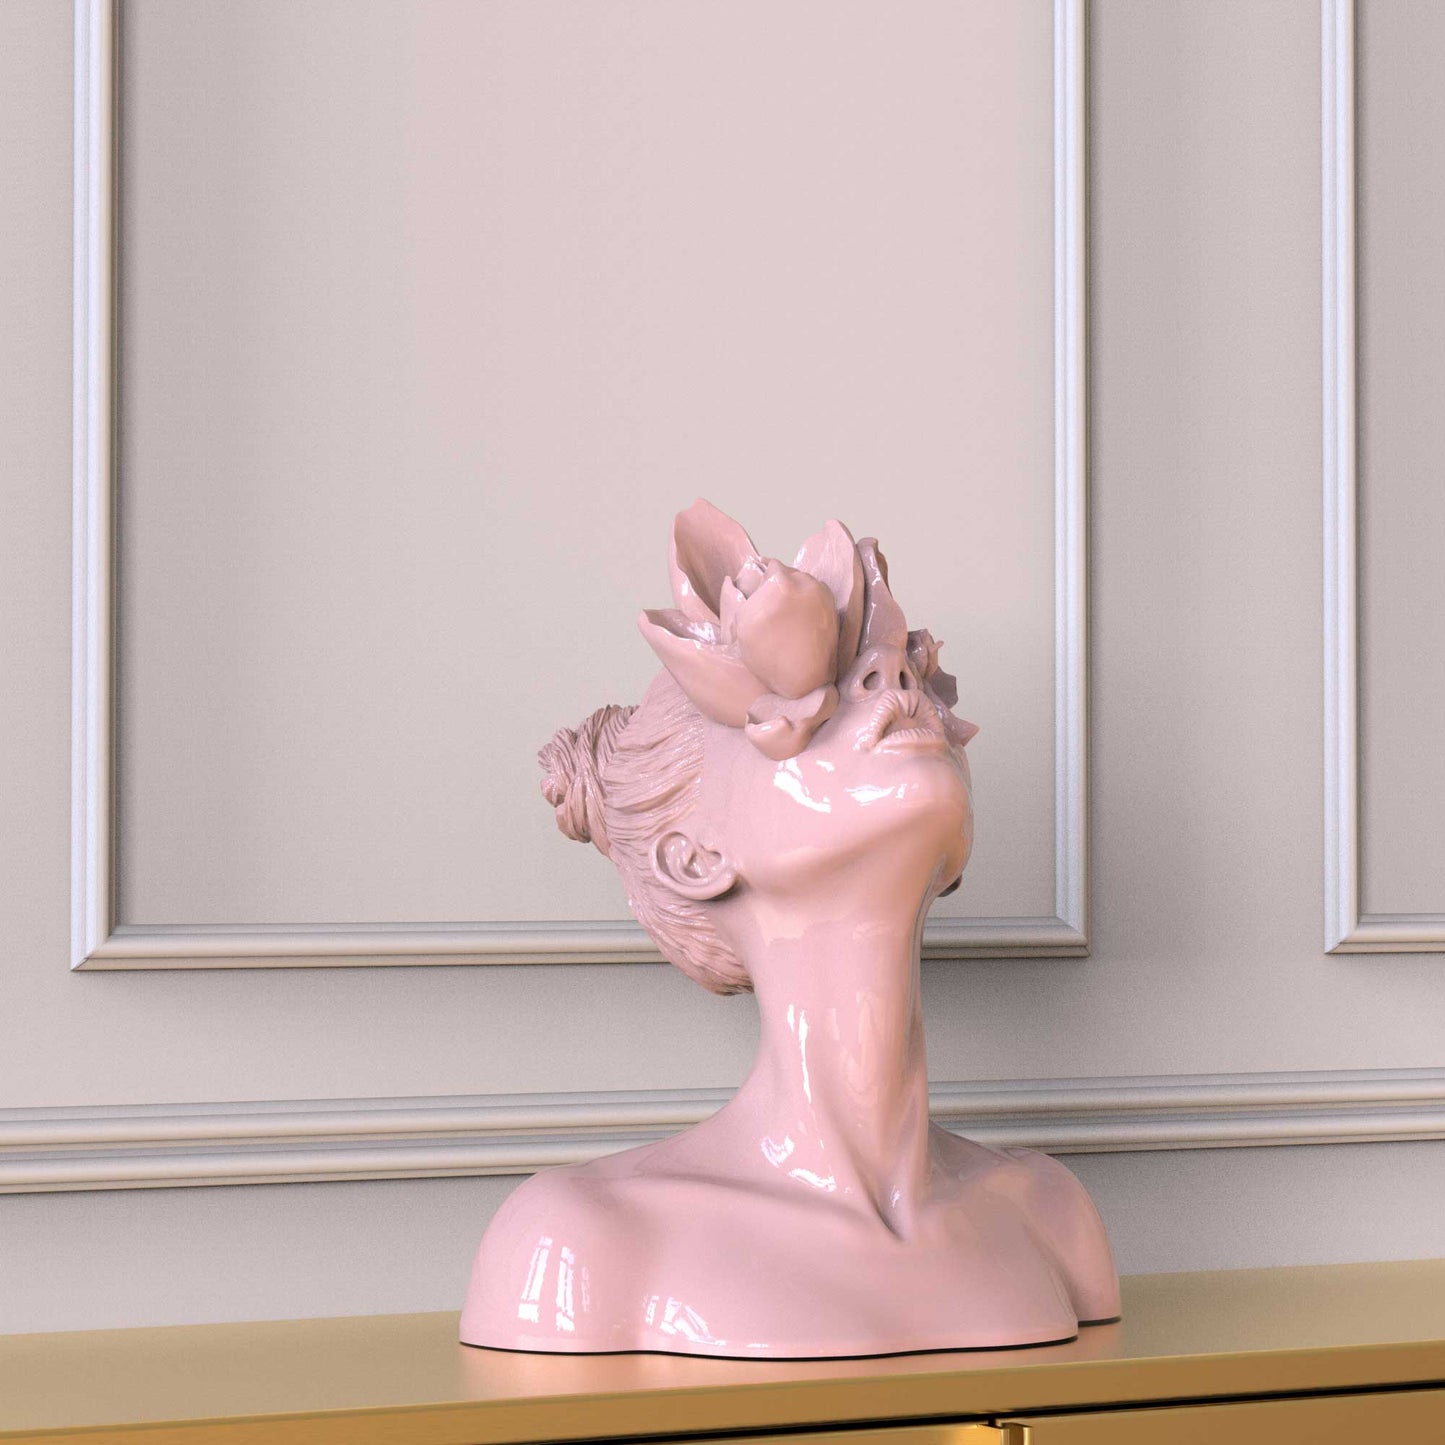 Sculpture "Daughter of Faunus" in cloudy pink